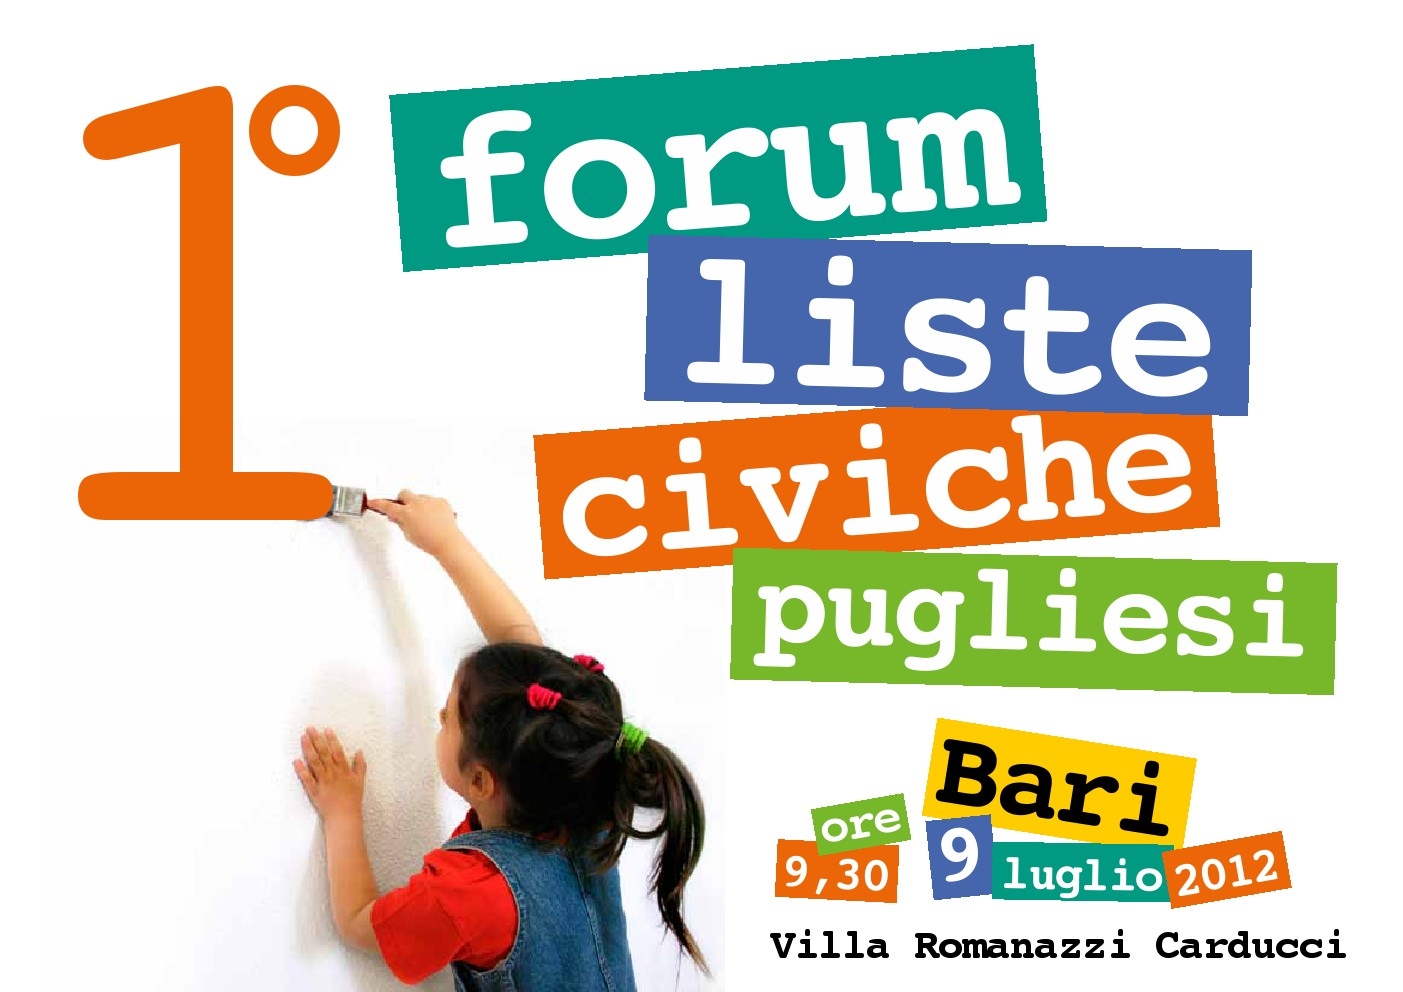 Bari, 9 luglio -  Forum delle liste civiche